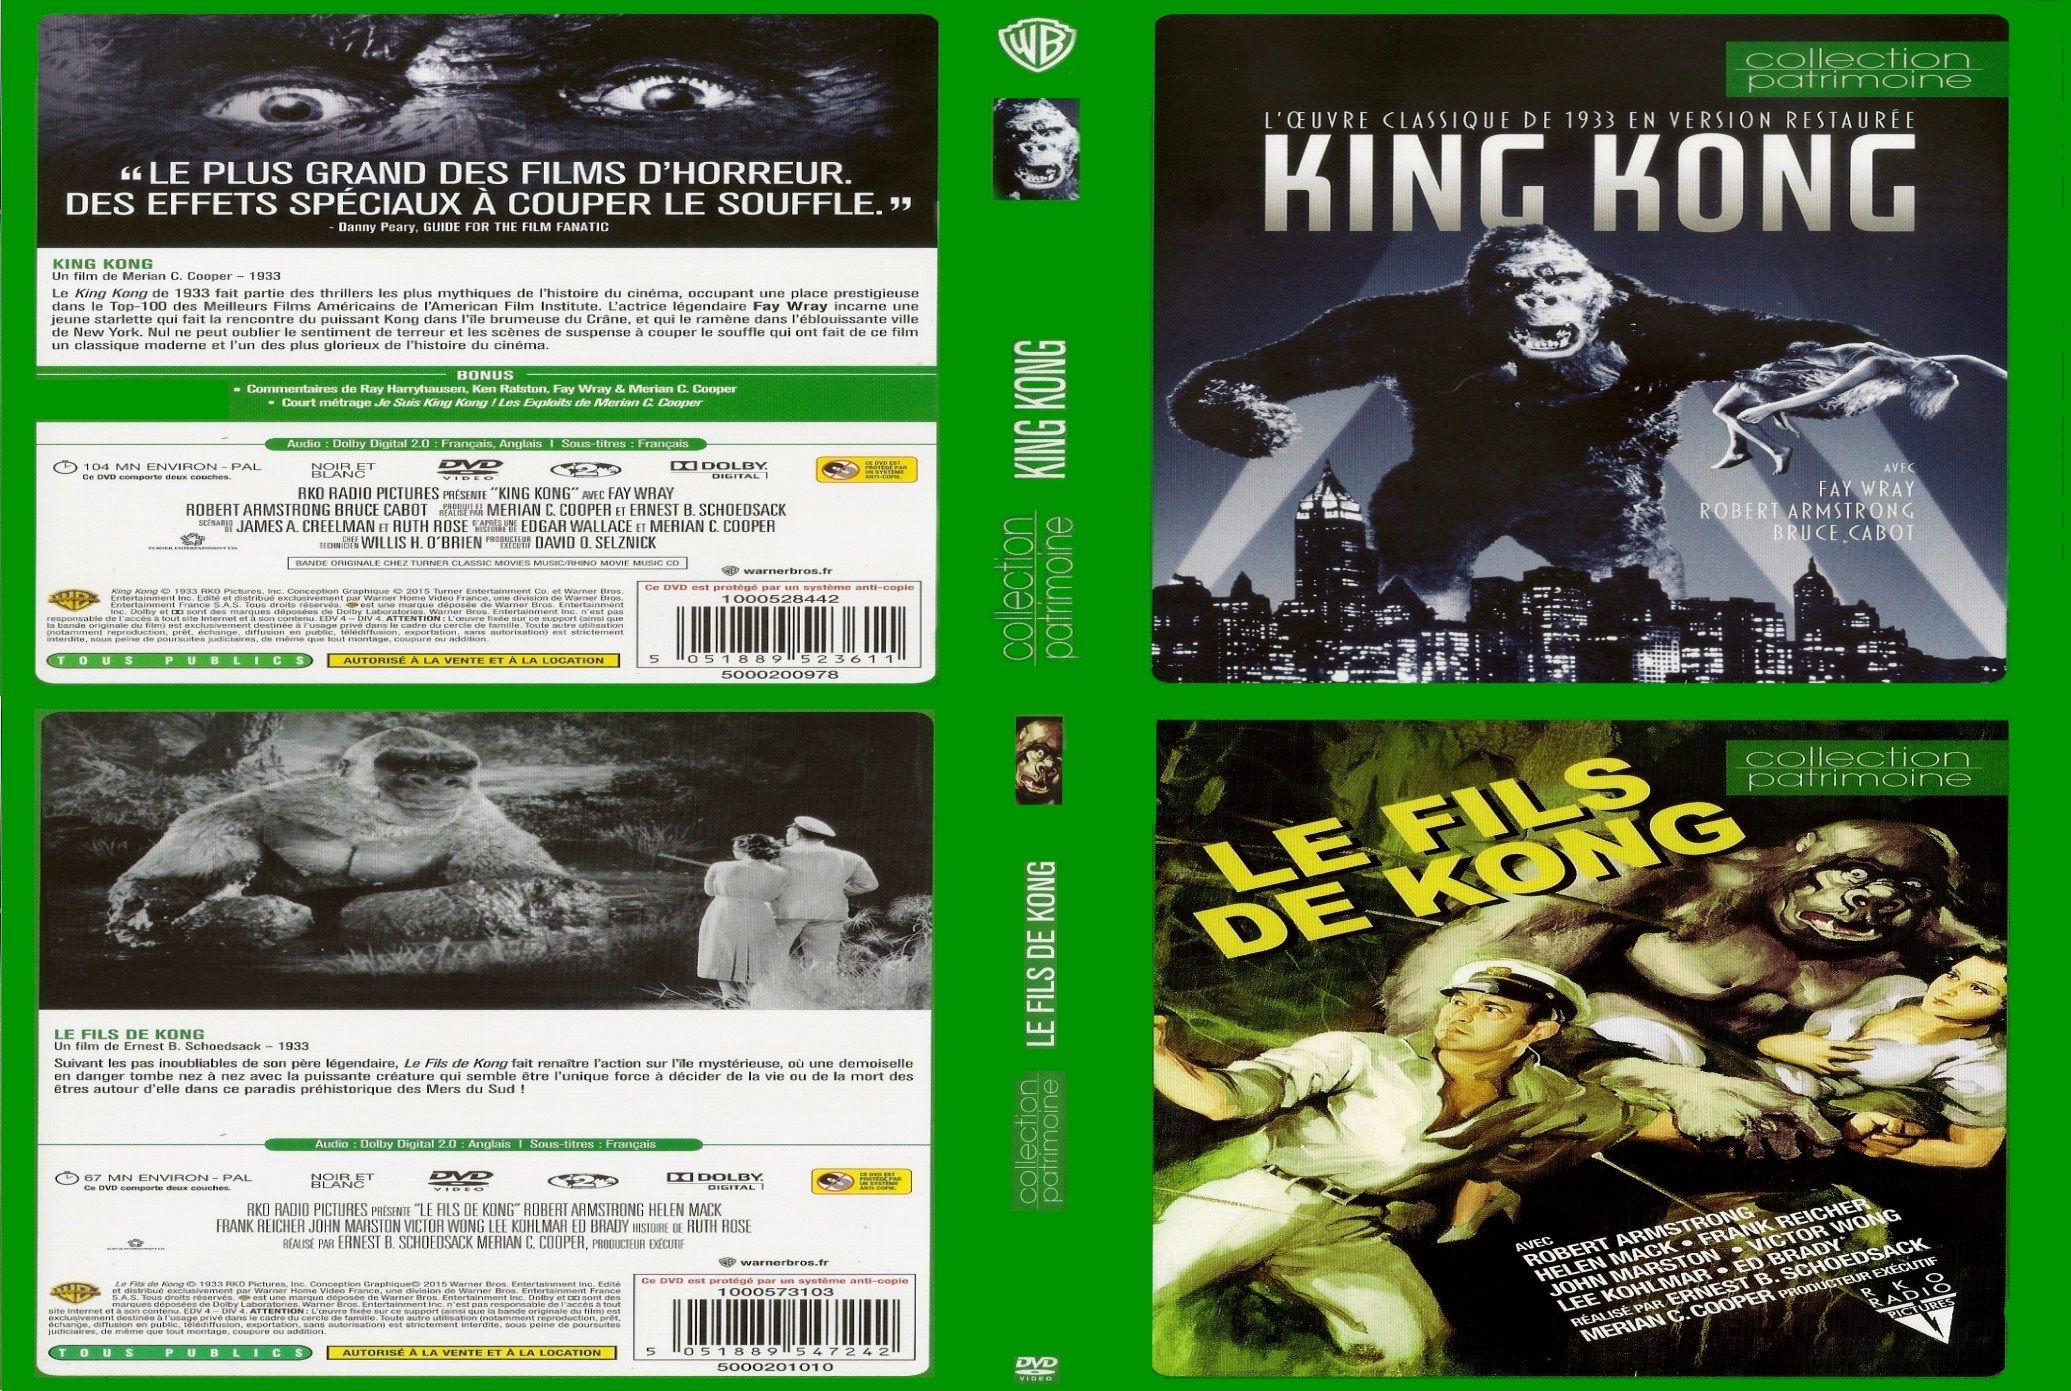 Jaquette DVD King Kong 1933 + fills de kong 1933 custom